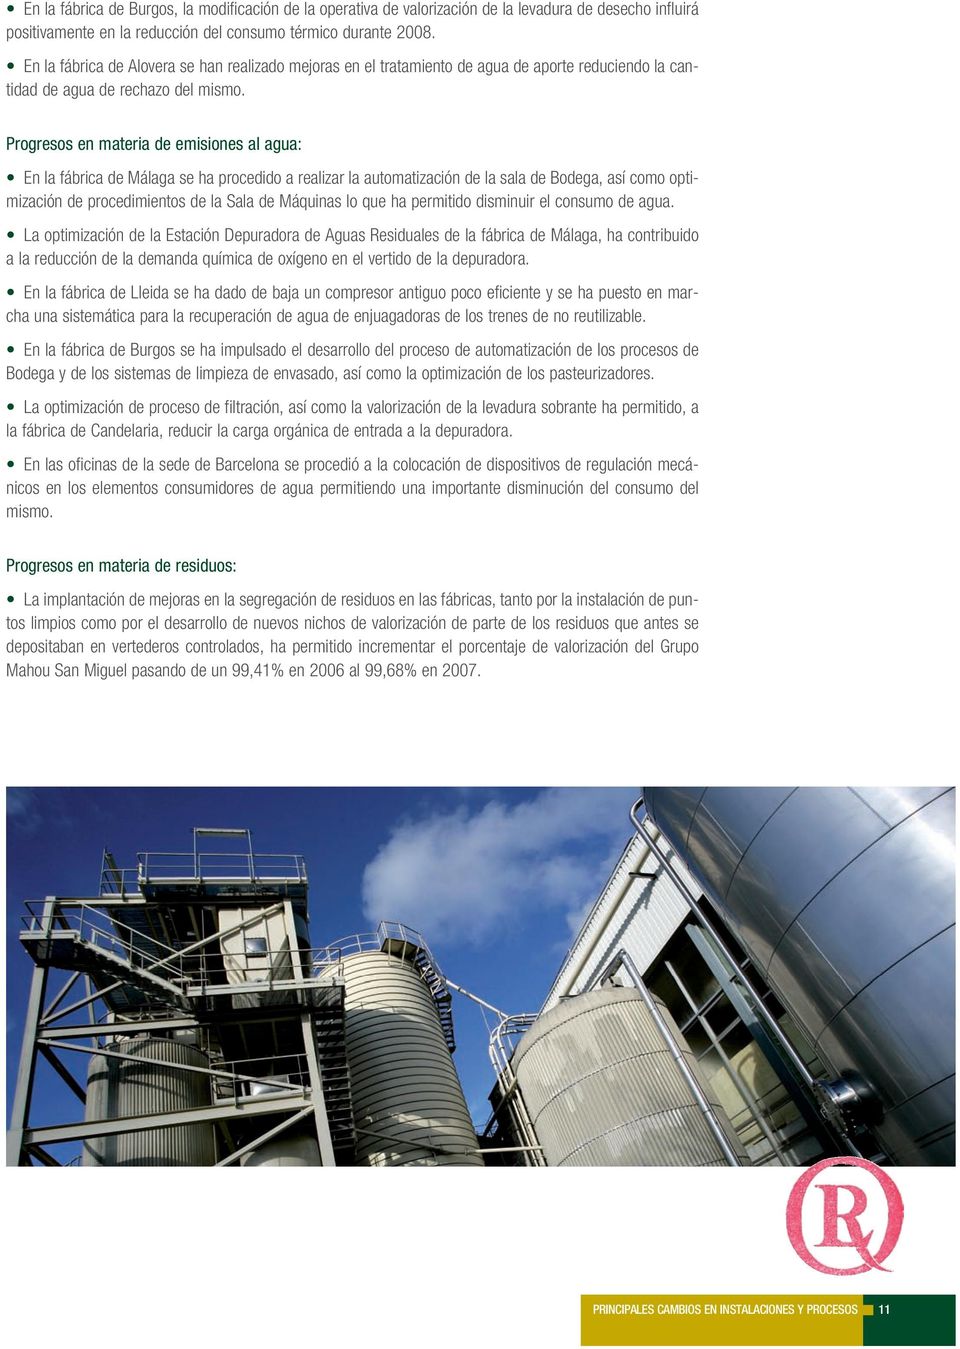 Progresos en materia de emisiones al agua: En la fábrica de Málaga se ha procedido a realizar la automatización de la sala de Bodega, así como optimización de procedimientos de la Sala de Máquinas lo